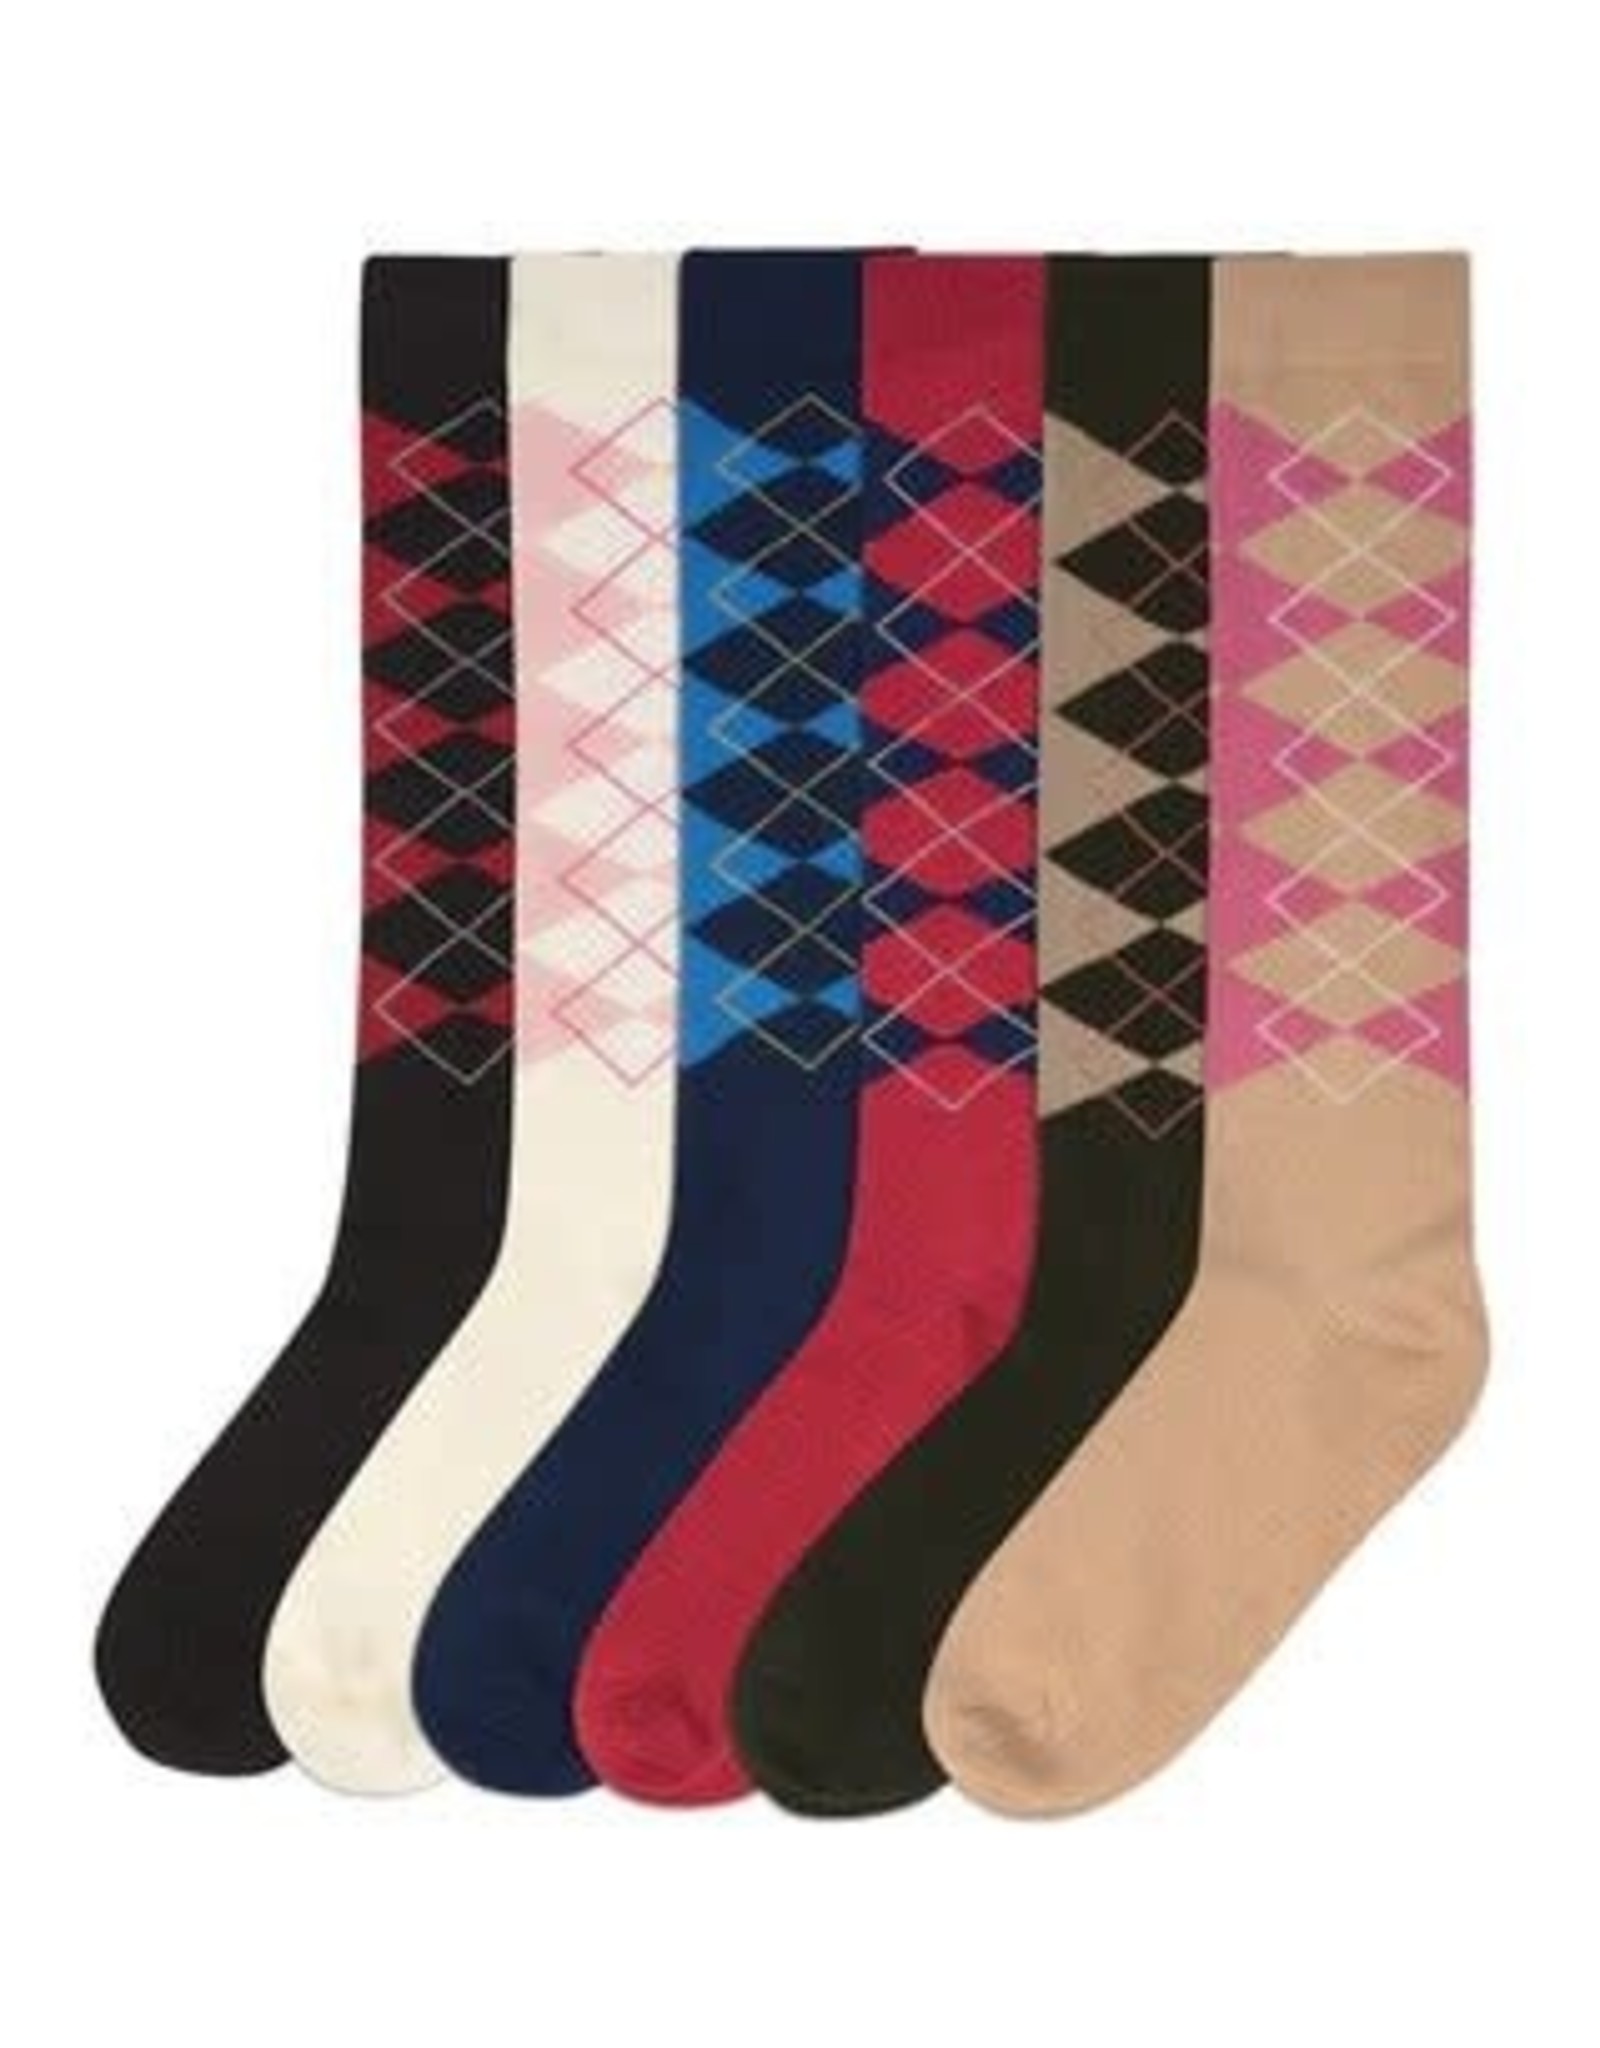 Women's knee high asst color socks